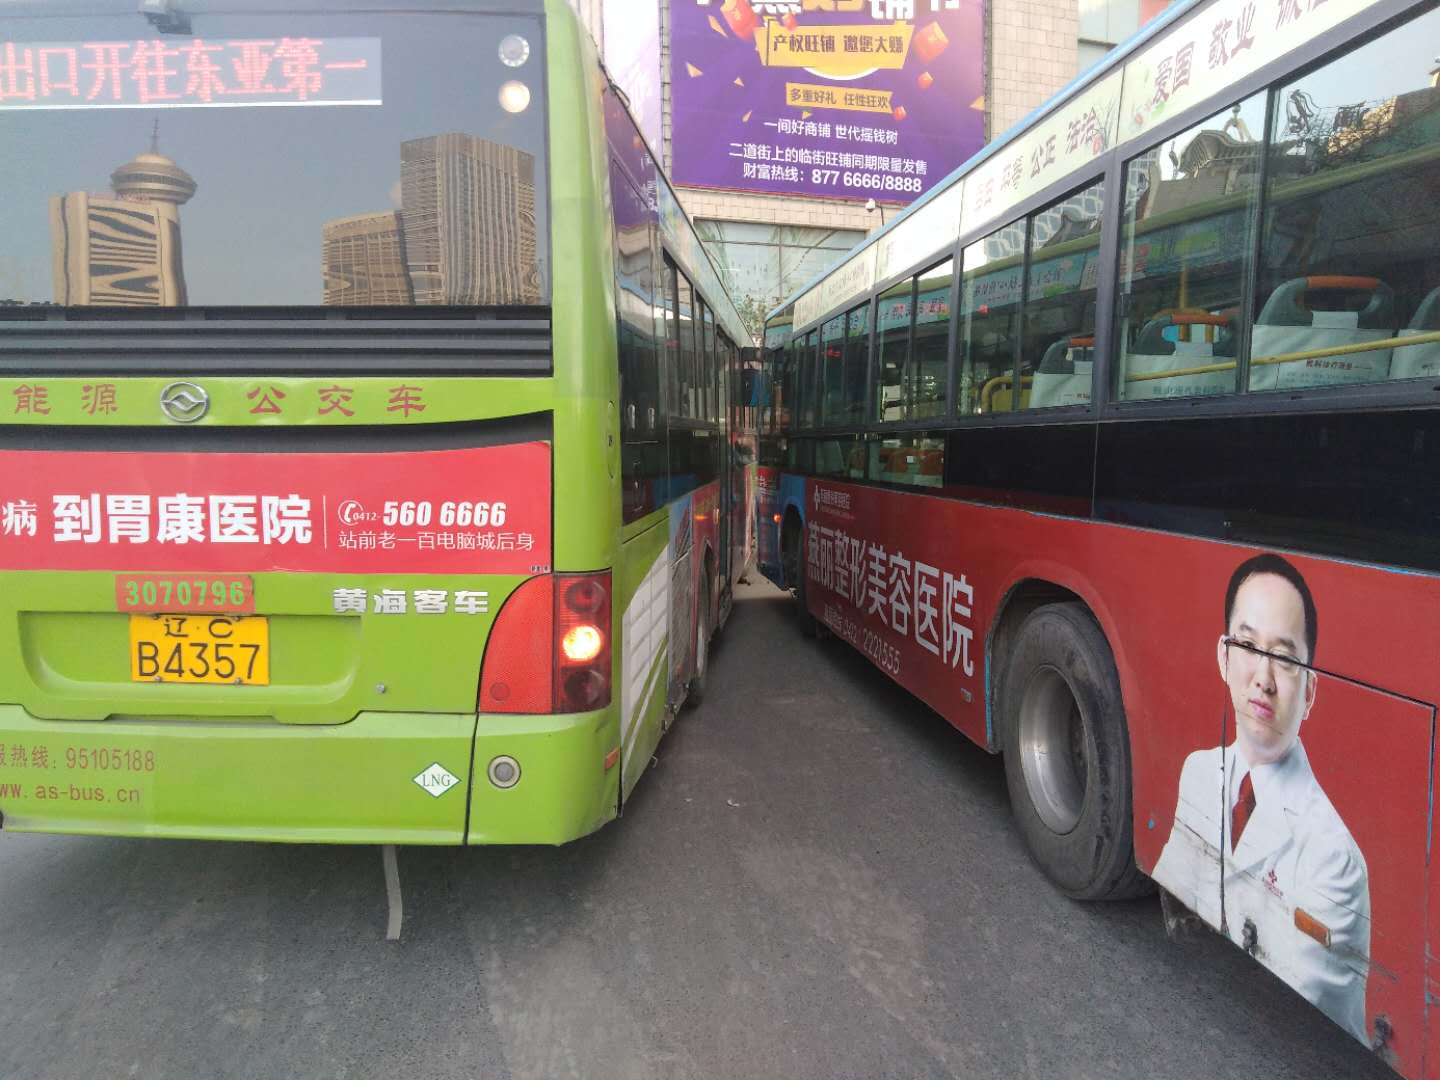 辽宁鞍山:马路中间两辆公交车相撞 你说怨谁?